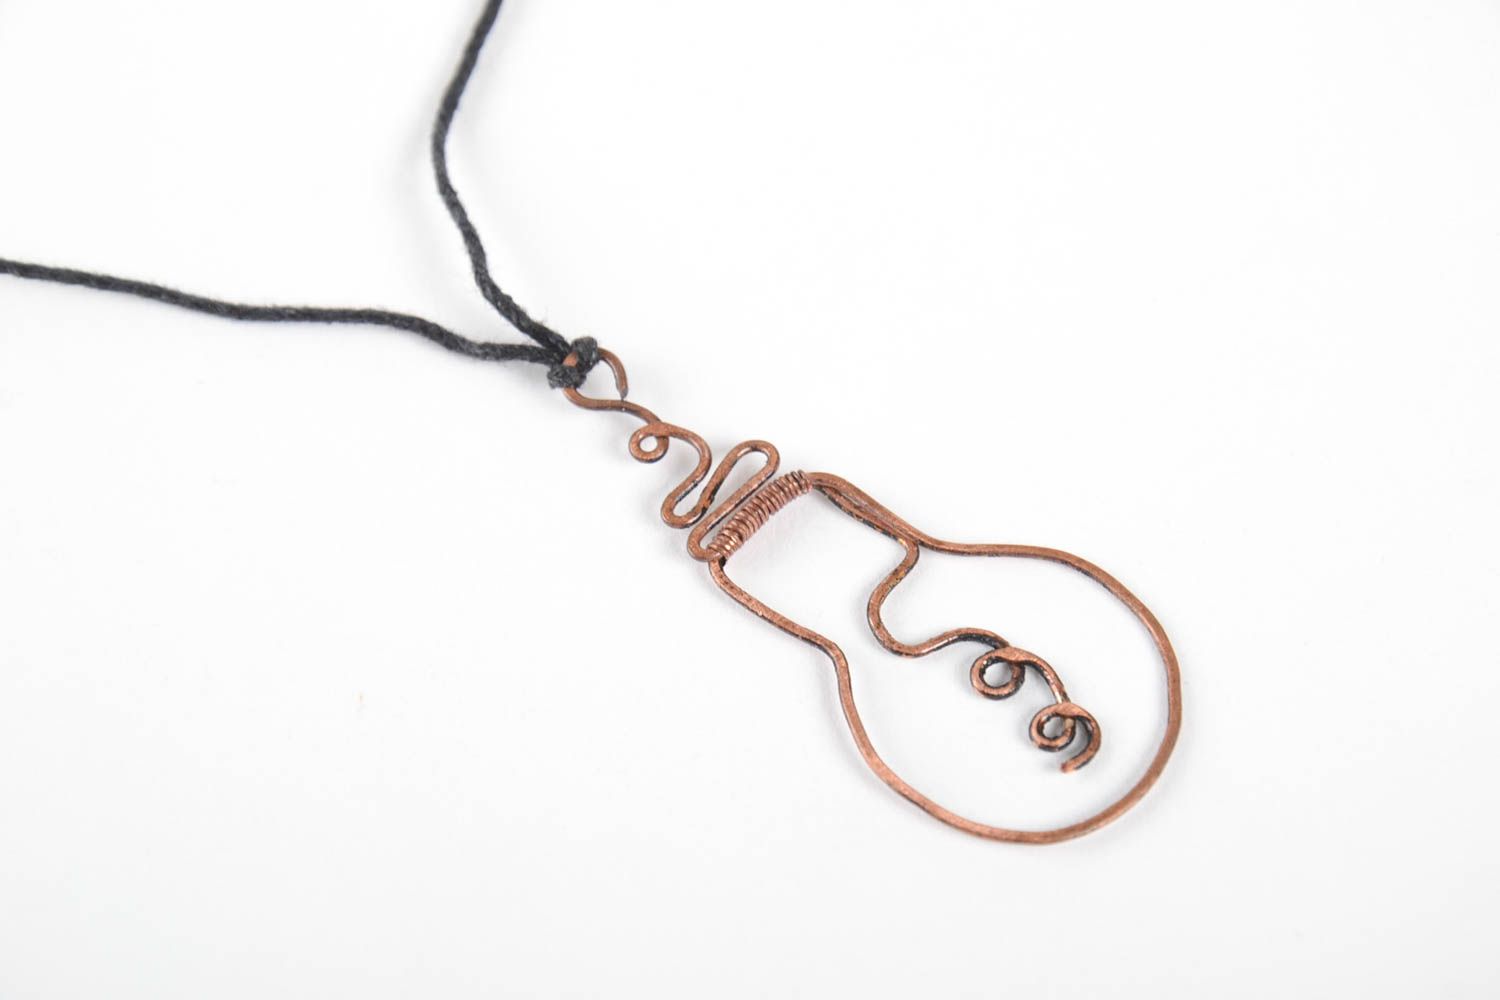 Handmade pendant copper pendant wire wrap pendant wire wrap accessories for girl photo 3